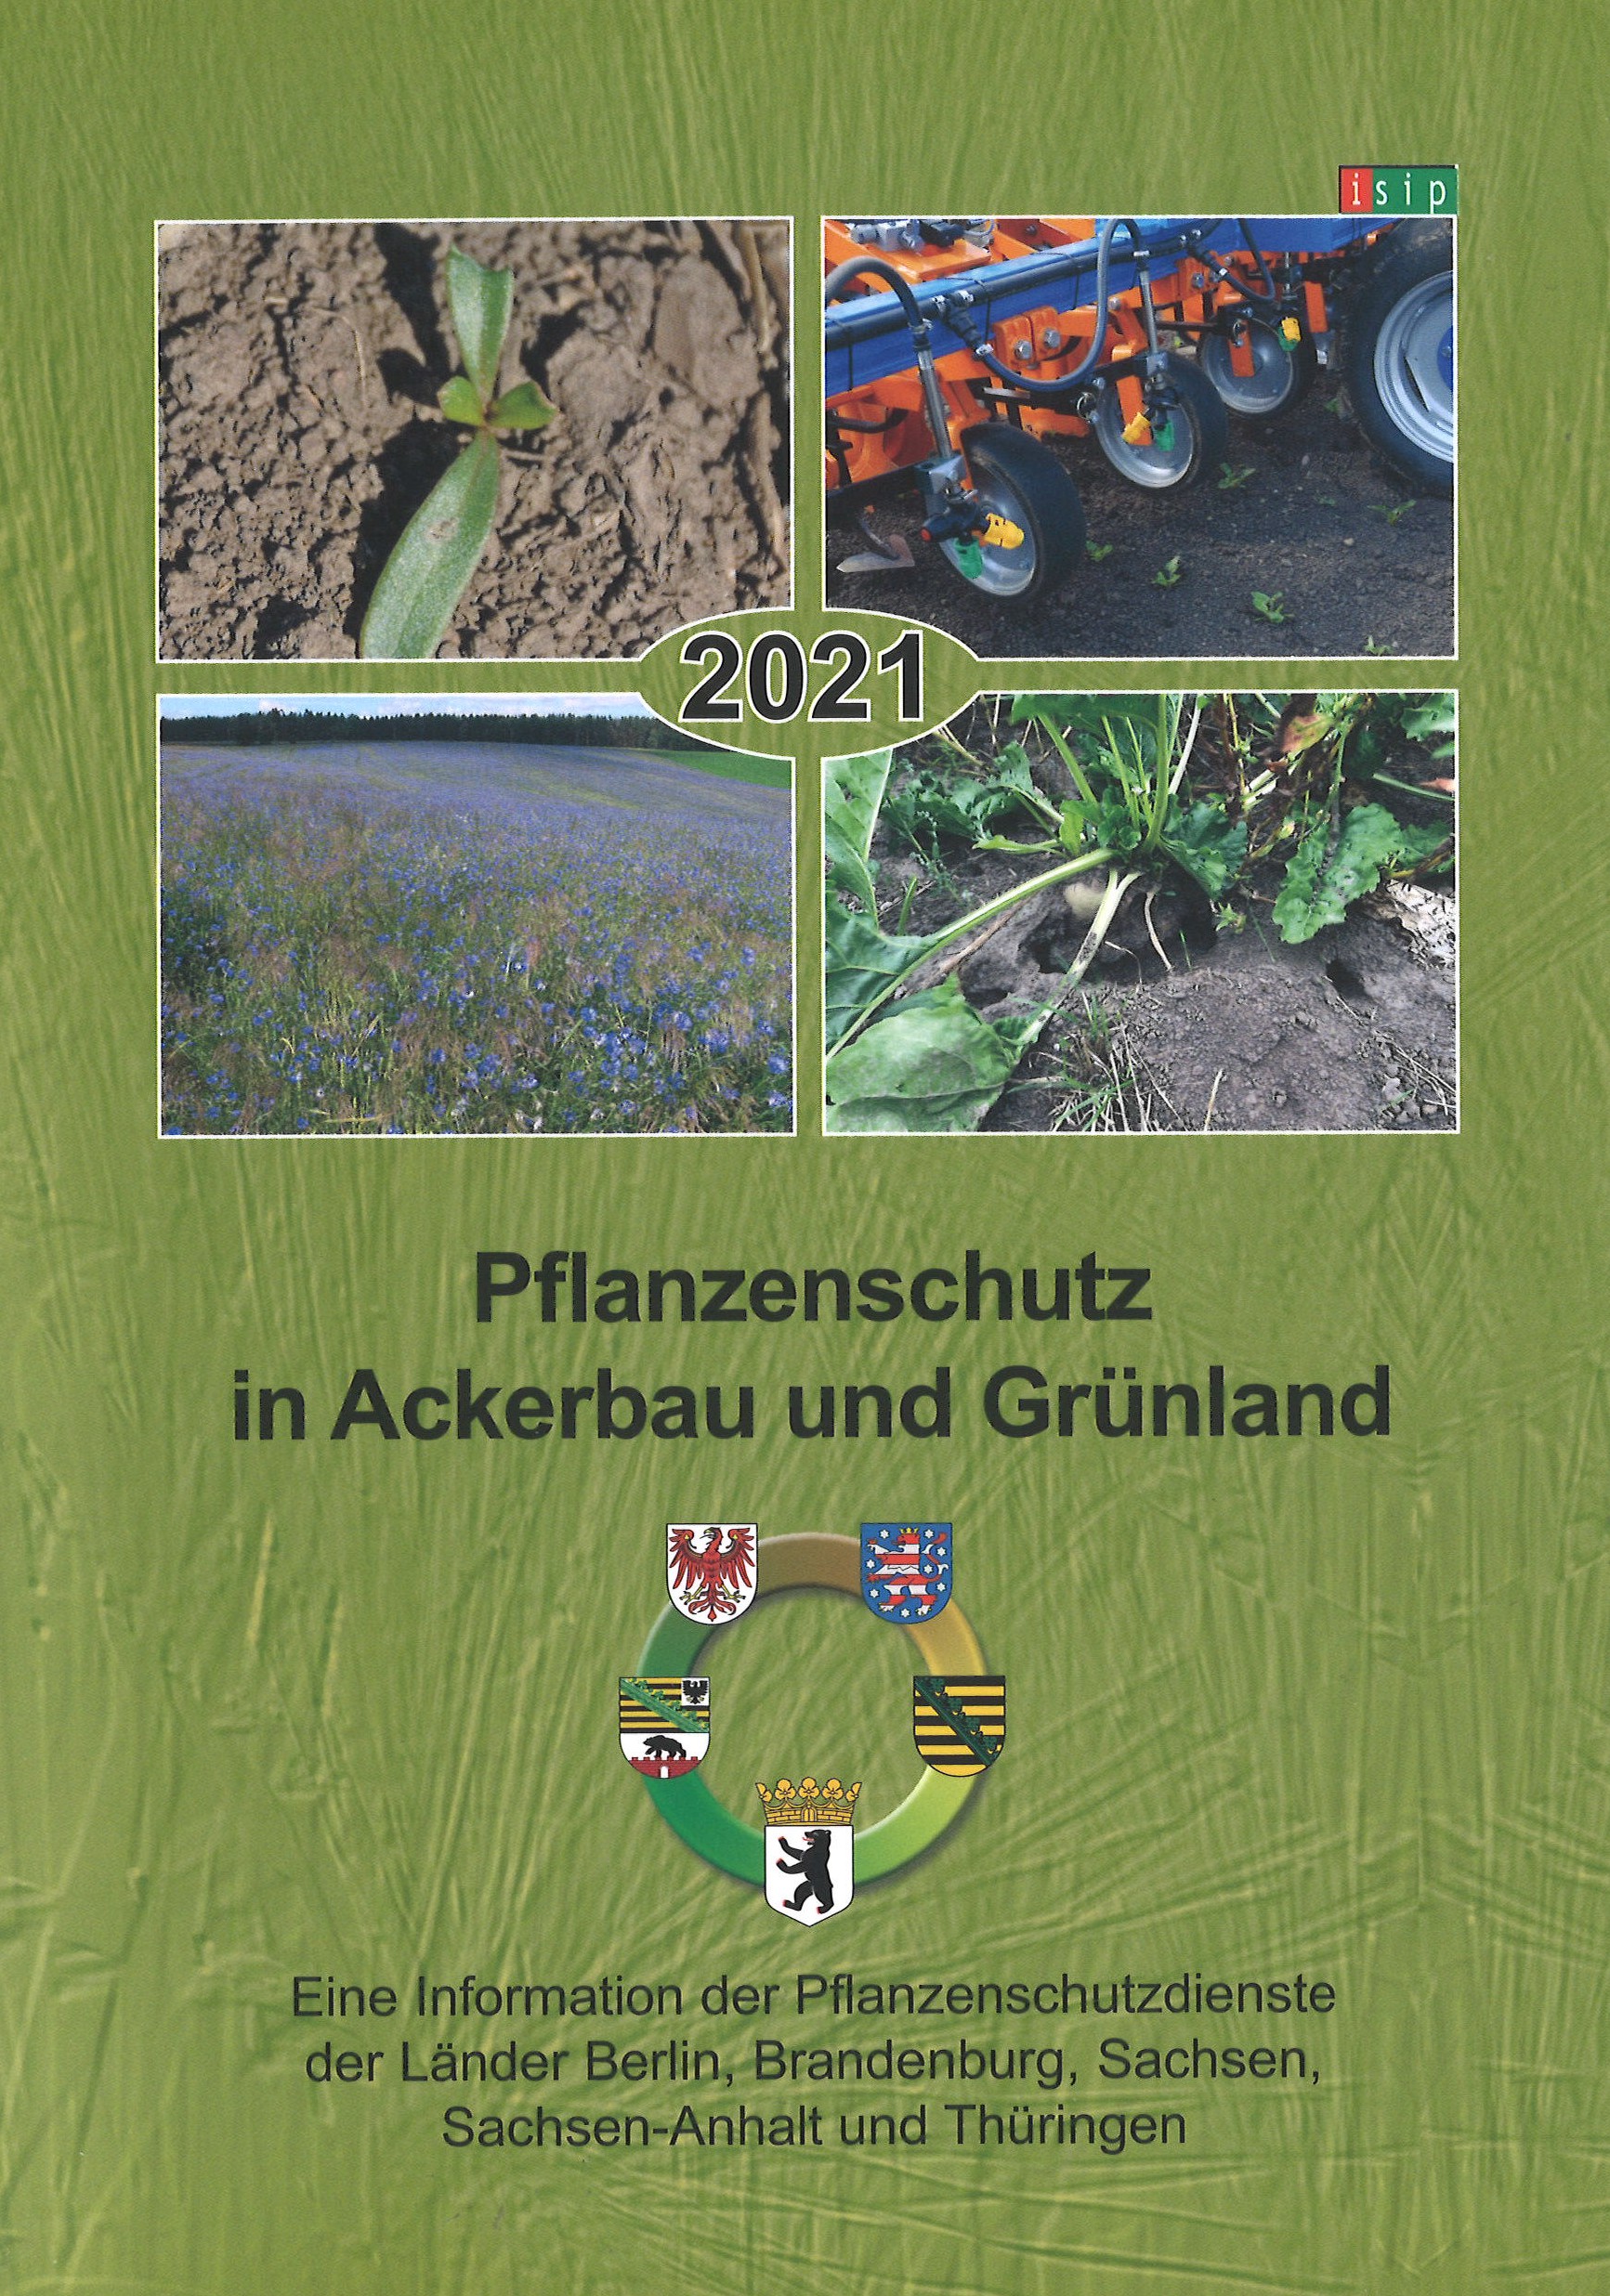 Bild von Titelbild Ackerbaubroschüre 2021